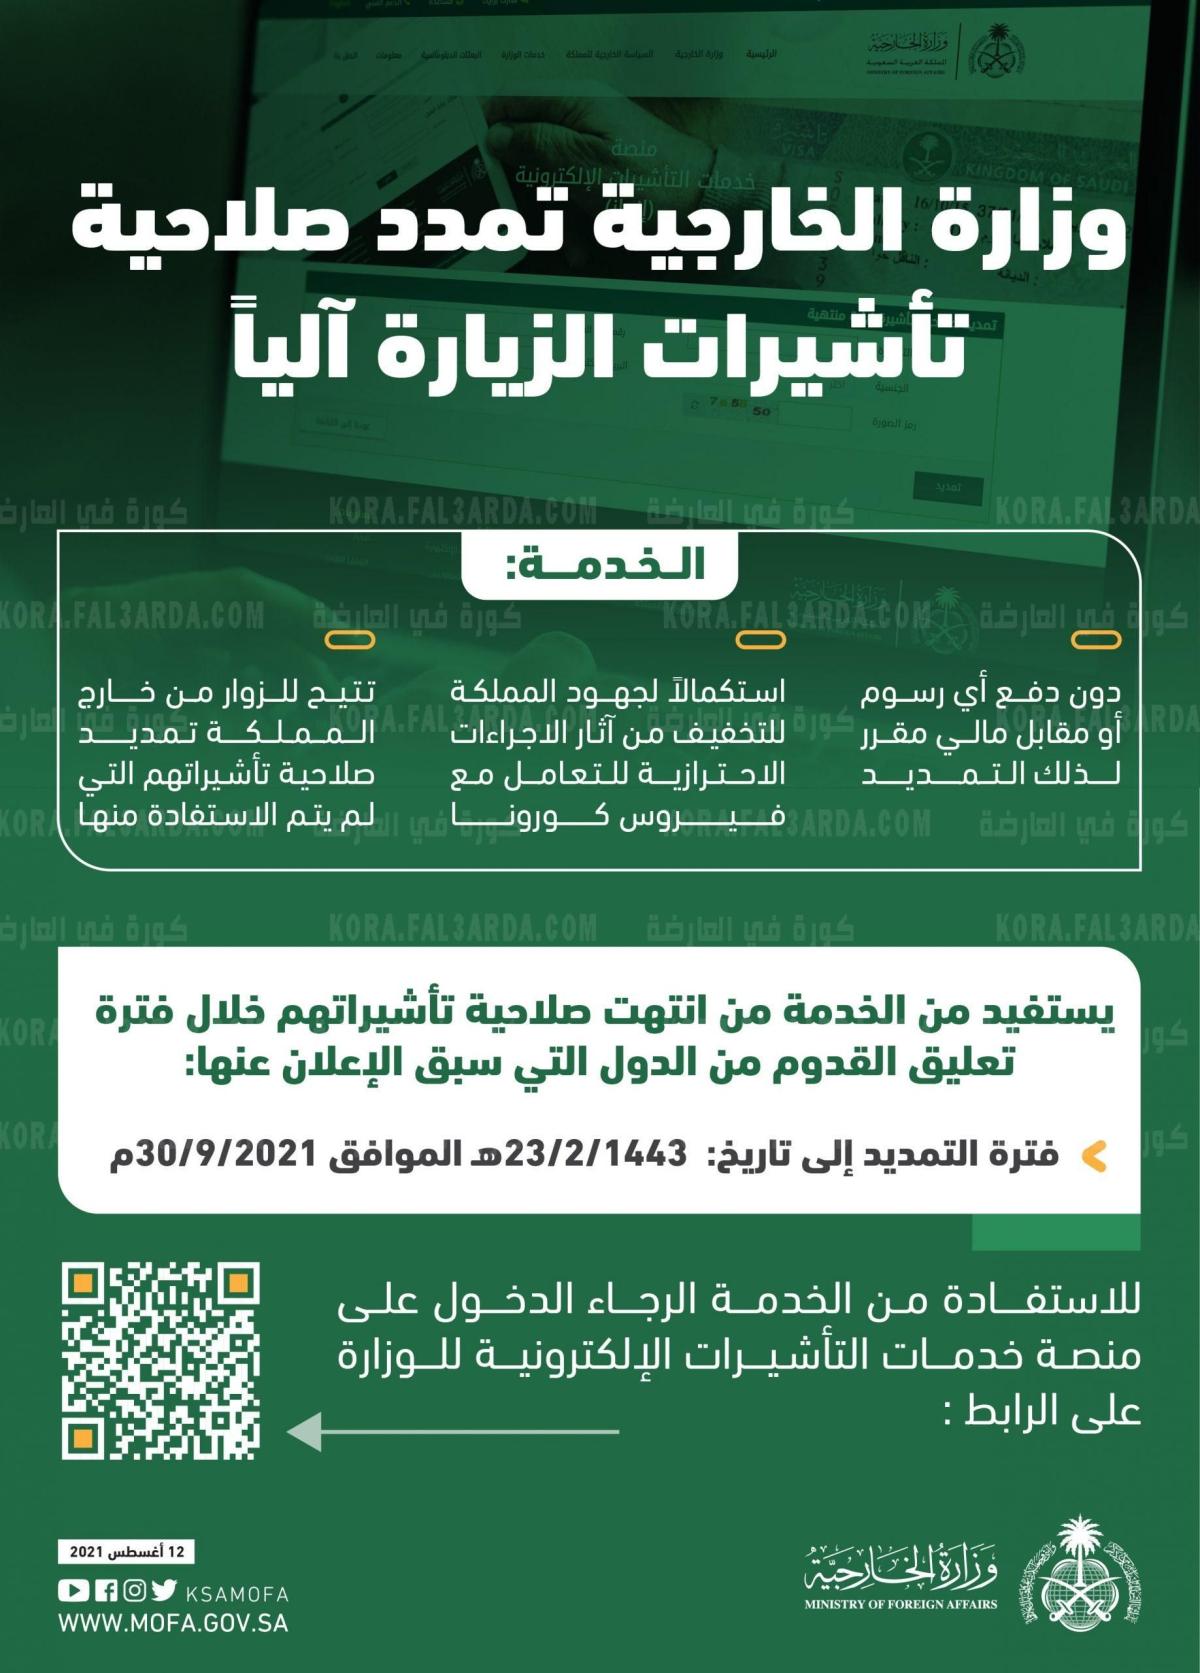 رابط التقديم على تمديد تأشيرة الزيارة بالسعودية إلكترونيا عبر منصة خدمات التأشيرات الإلكترونية (إنجاز) enjazit.com.sa